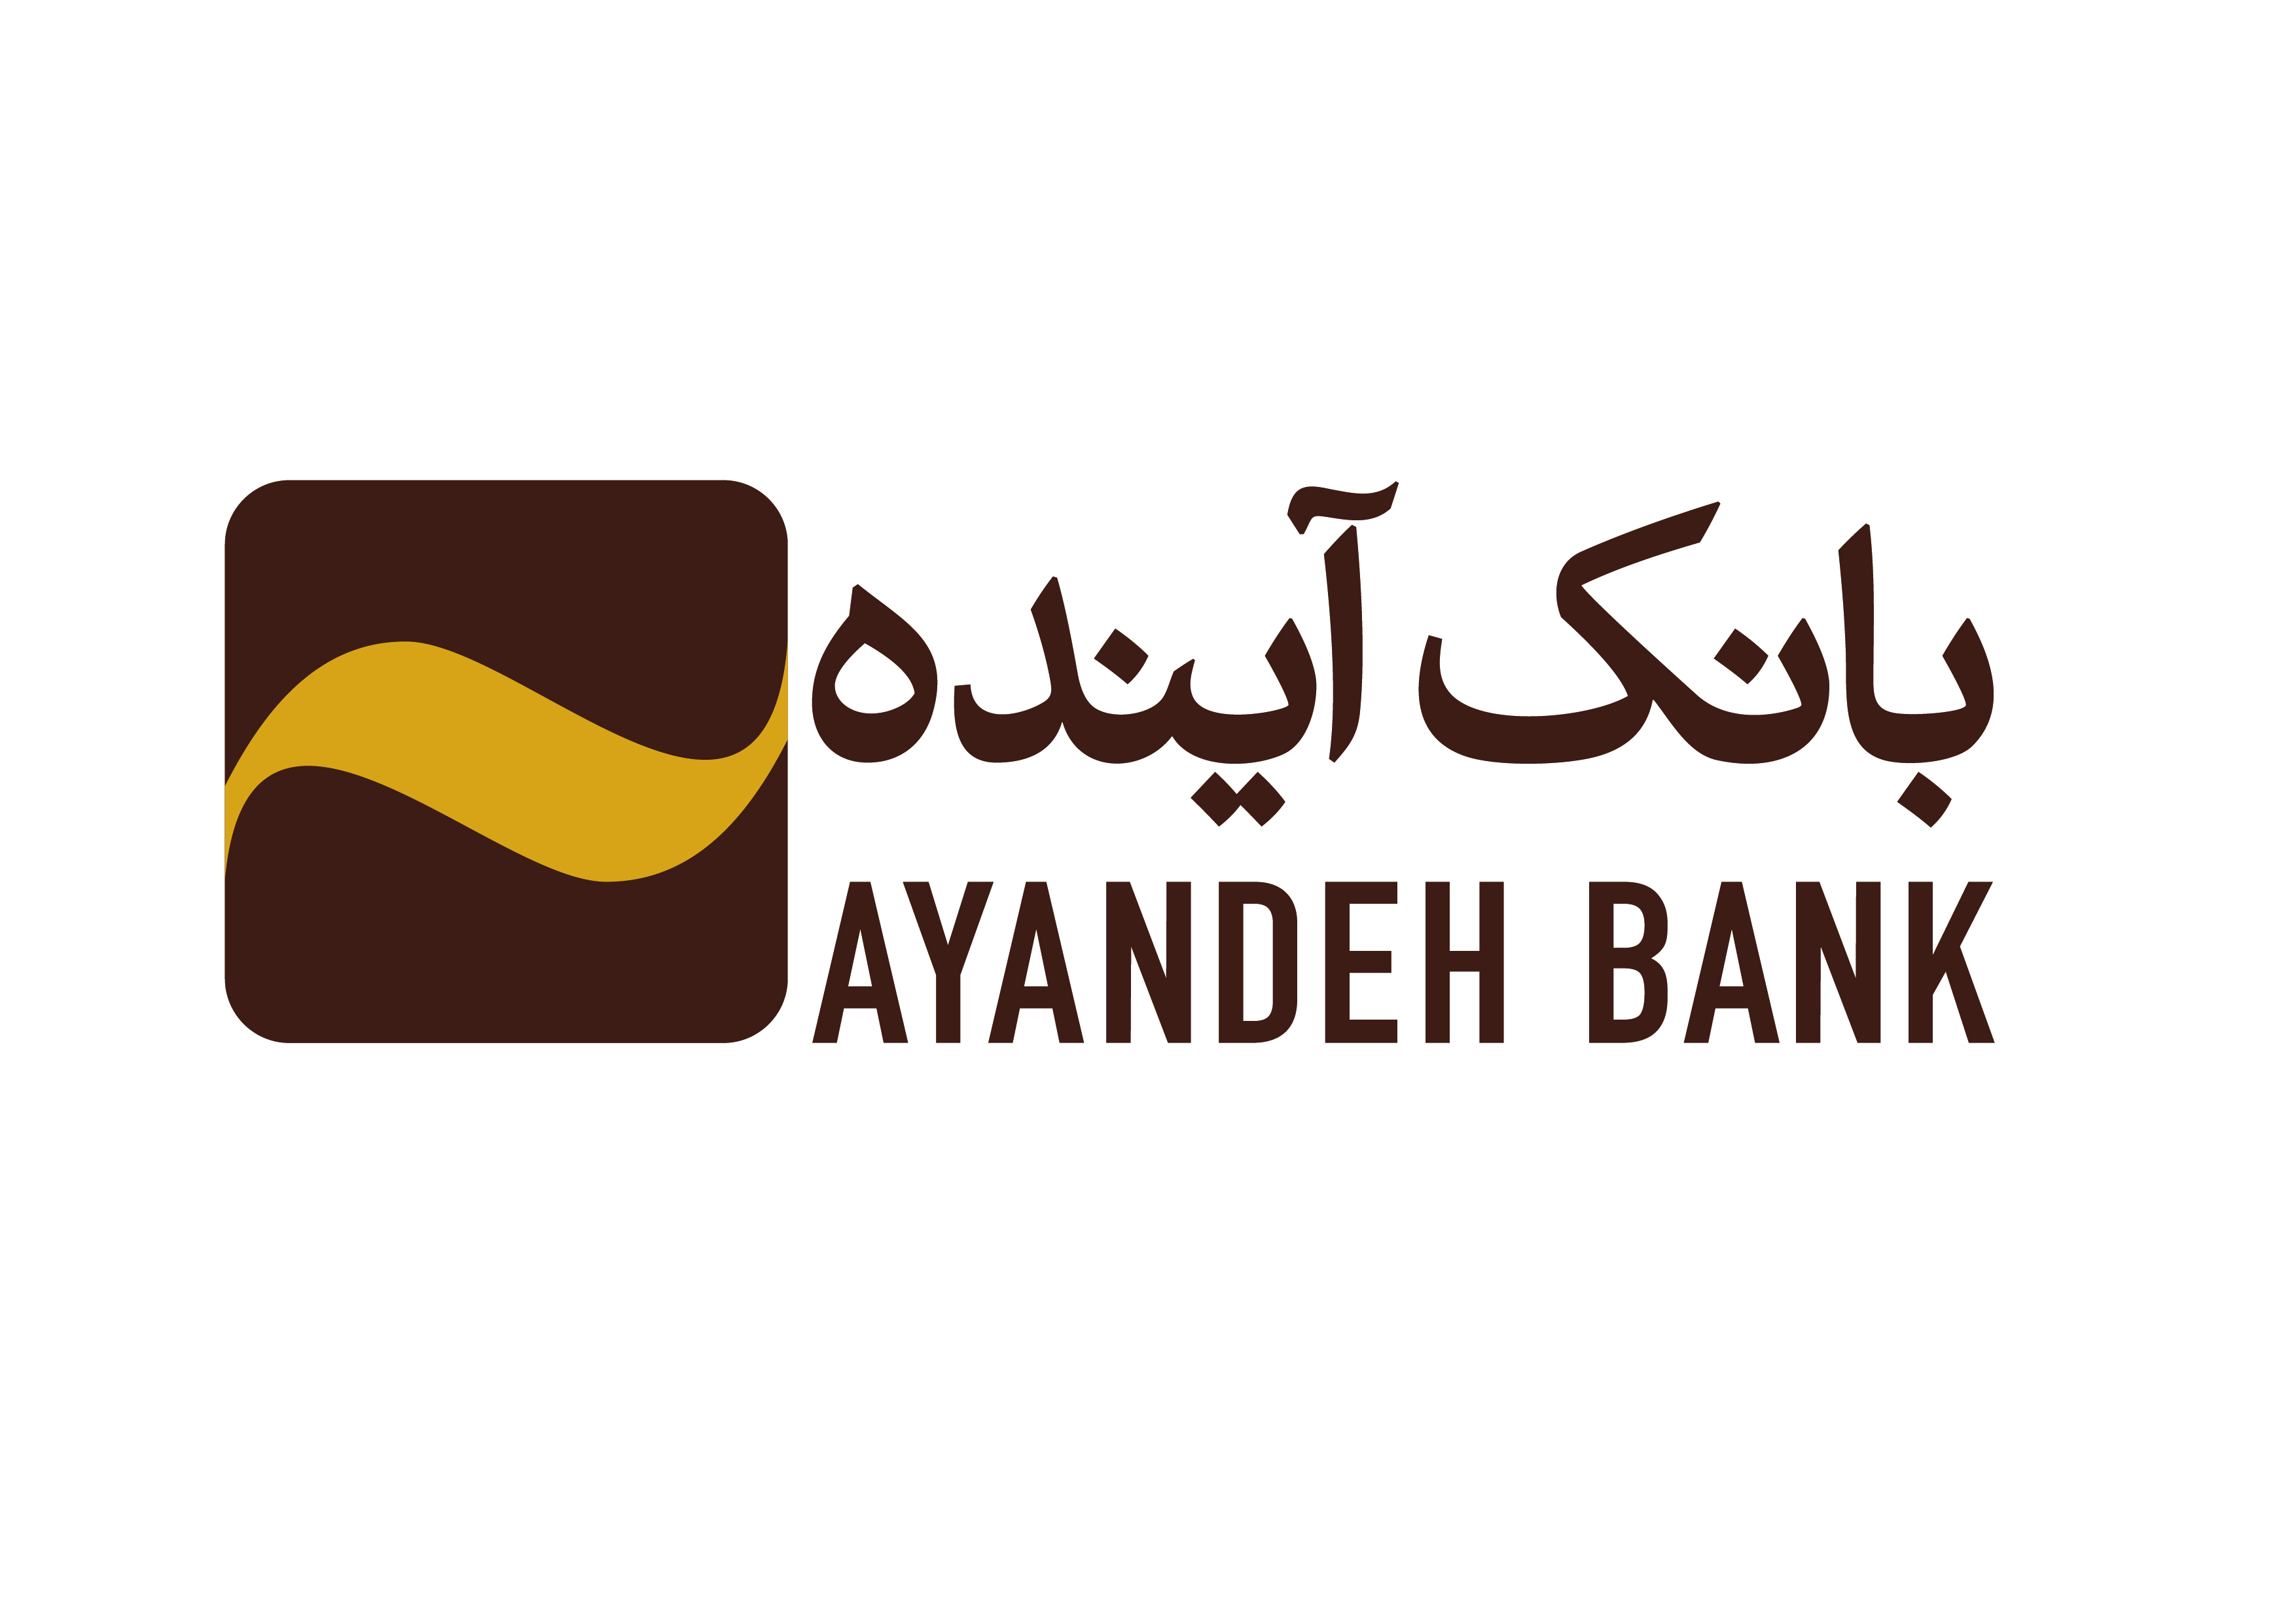 بانک آینده بانک سال جمهوری اسلامی ایران در ٢٠١٩ میلادی انتخاب شد